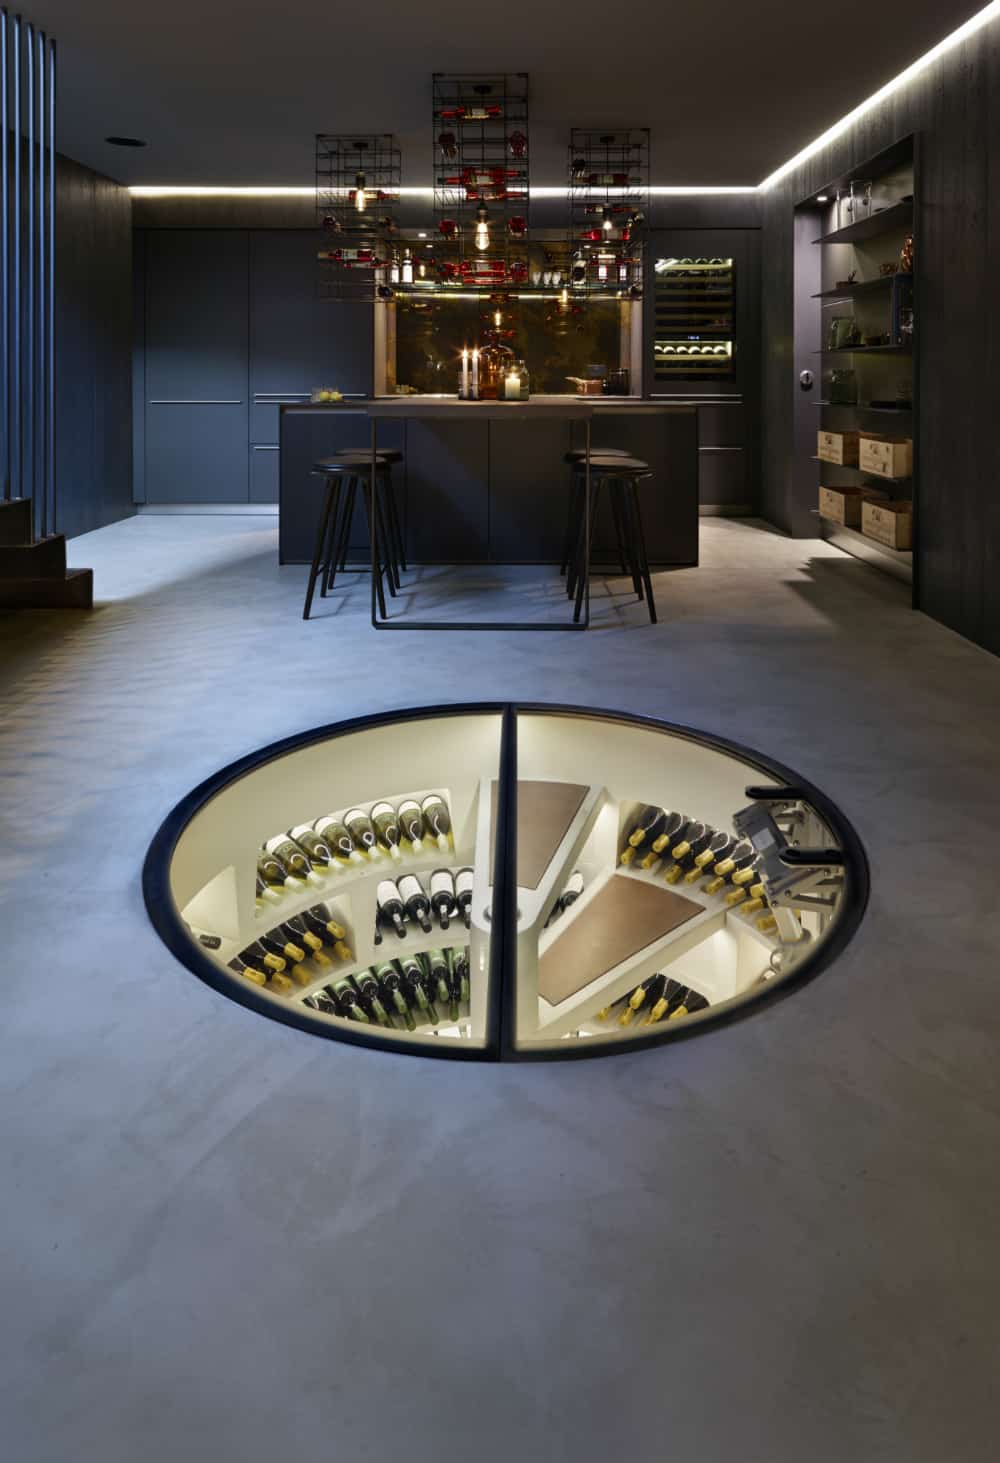 Spiral wine cellar